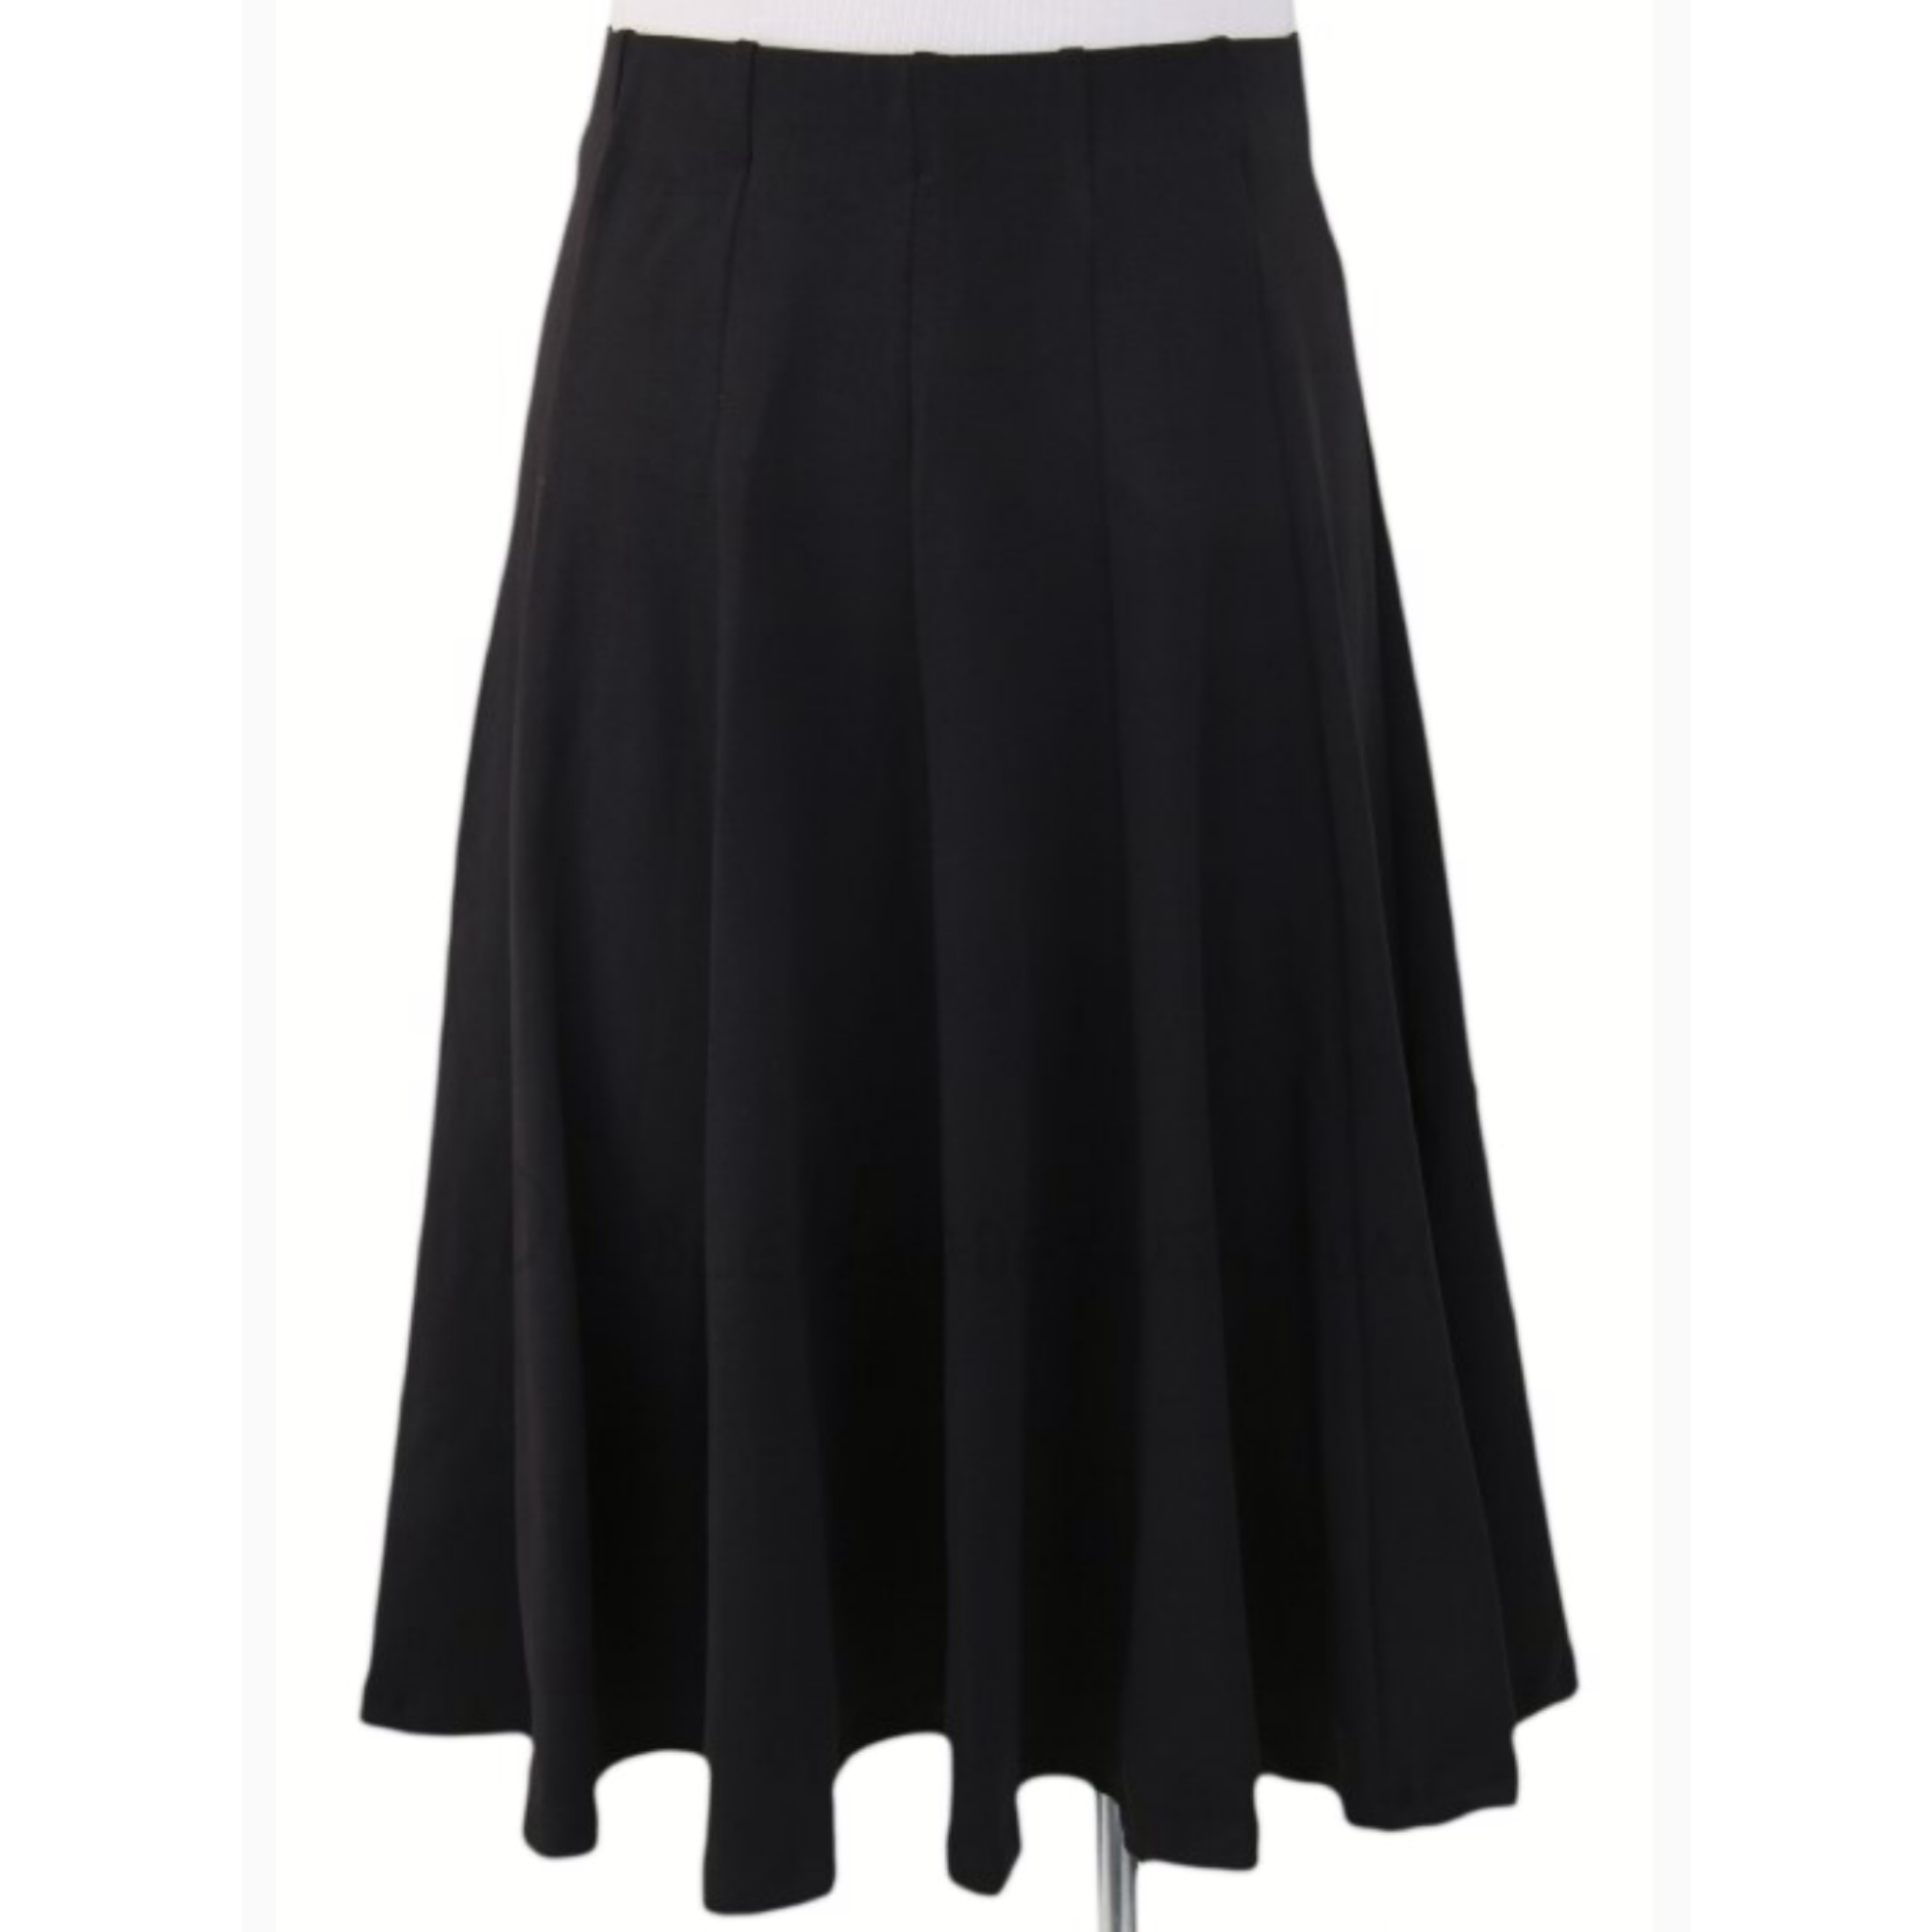 Kiki Riki Ladies Cotton Stretch Panel Skirt tznius-fashion-tzniut ...